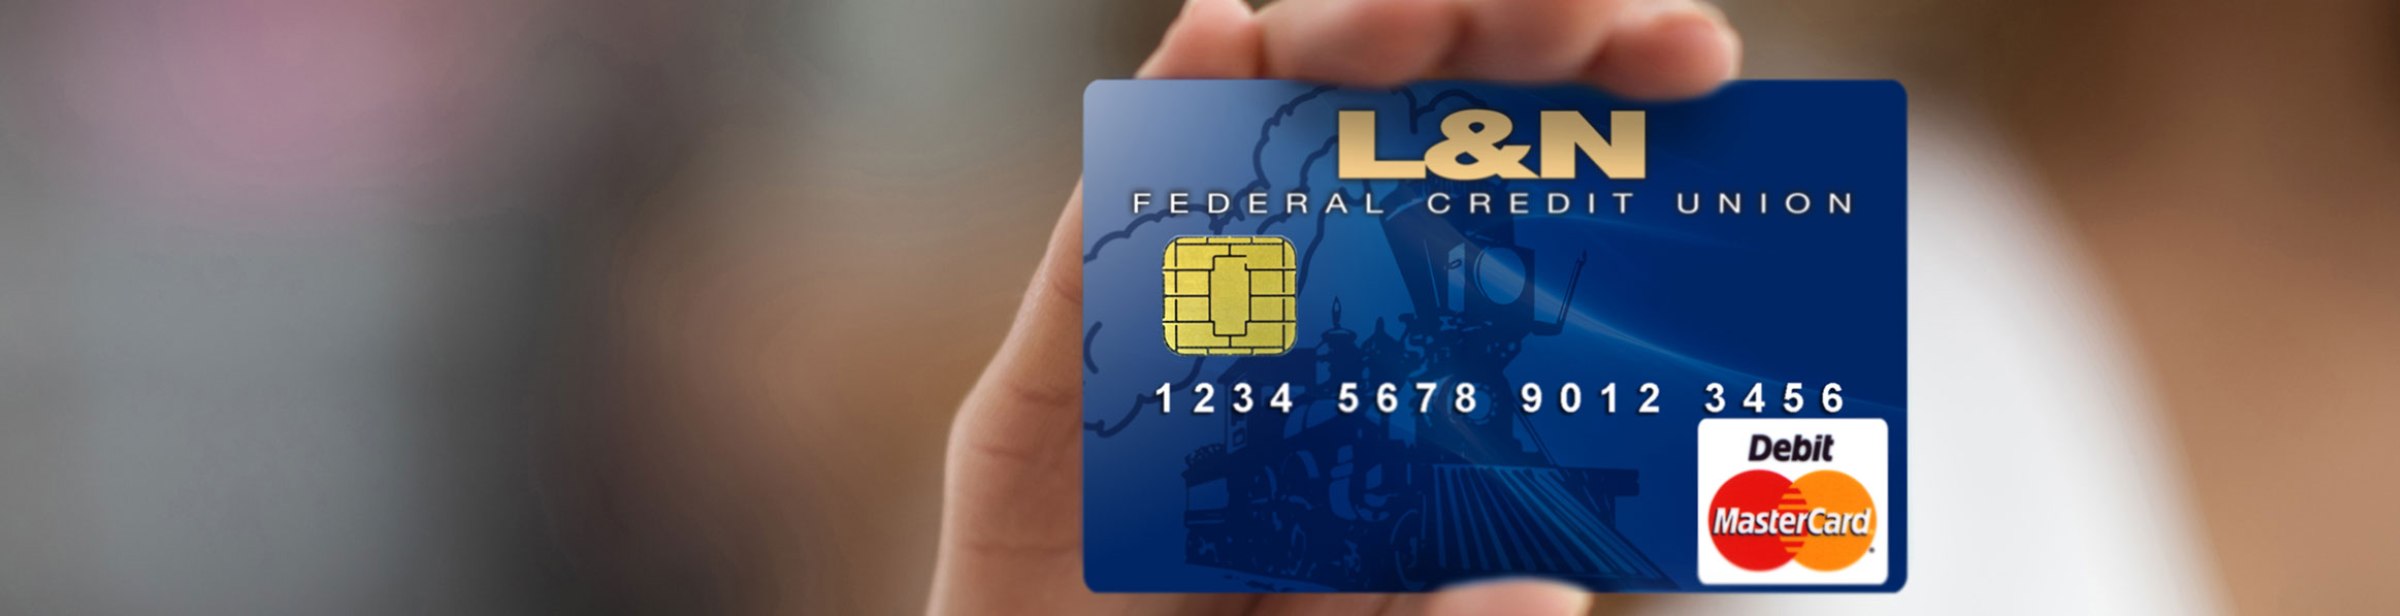 L&N FCU debit card